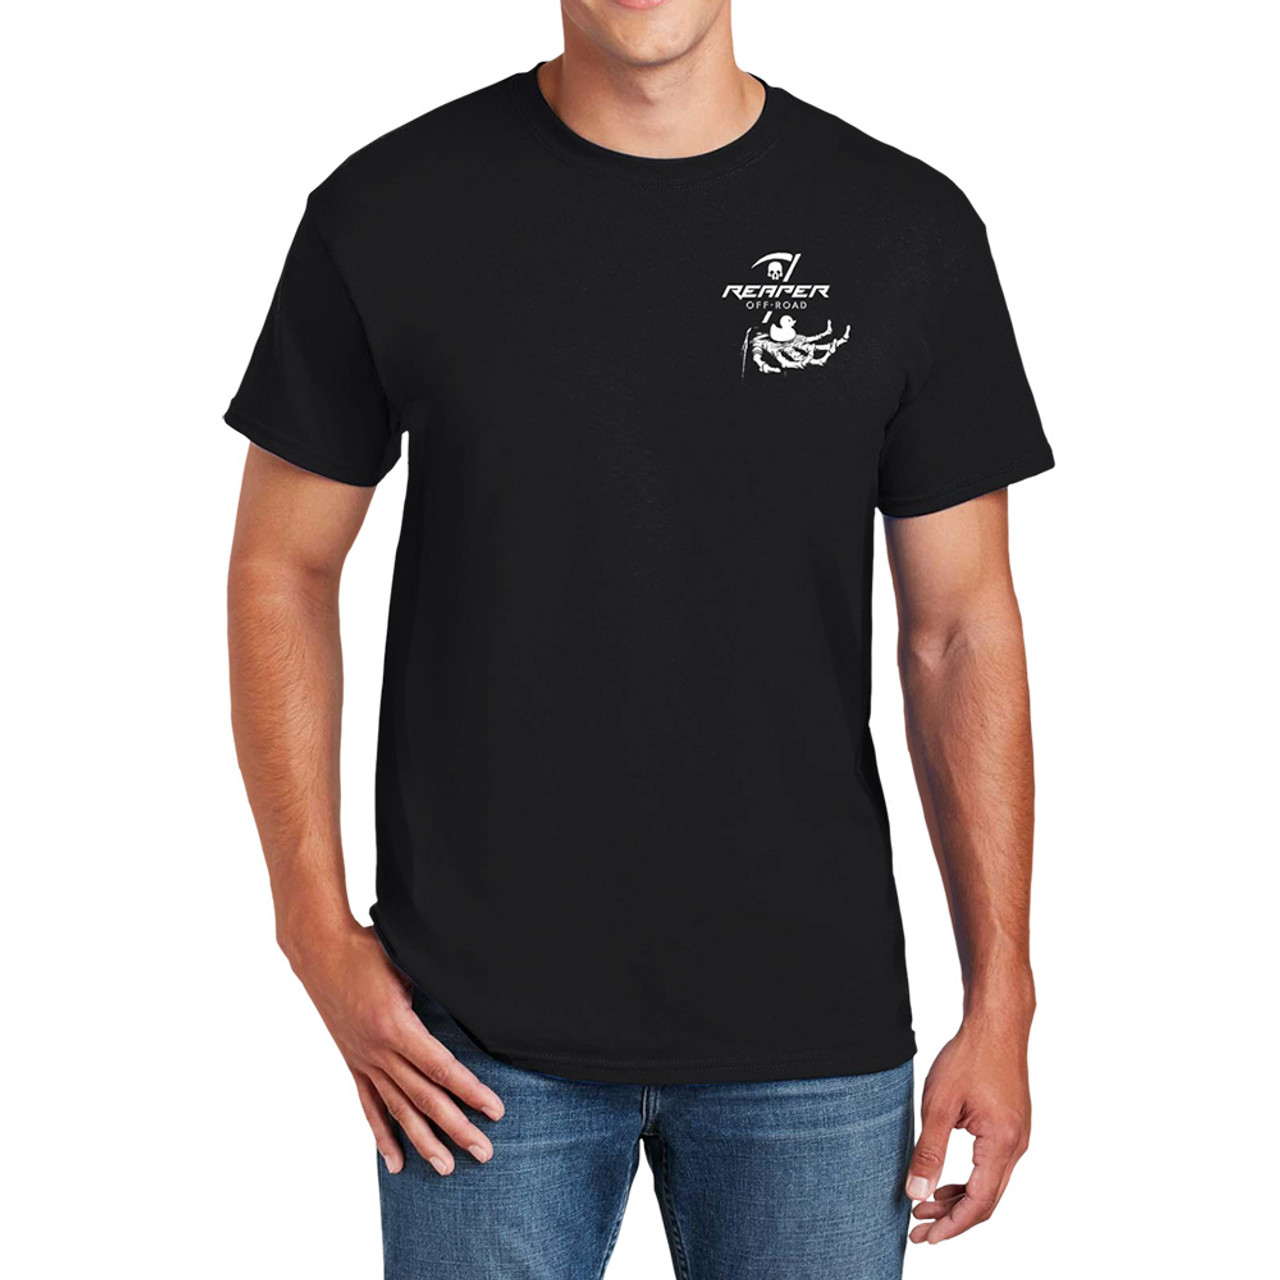 Reaper Off-Road T-Shirt